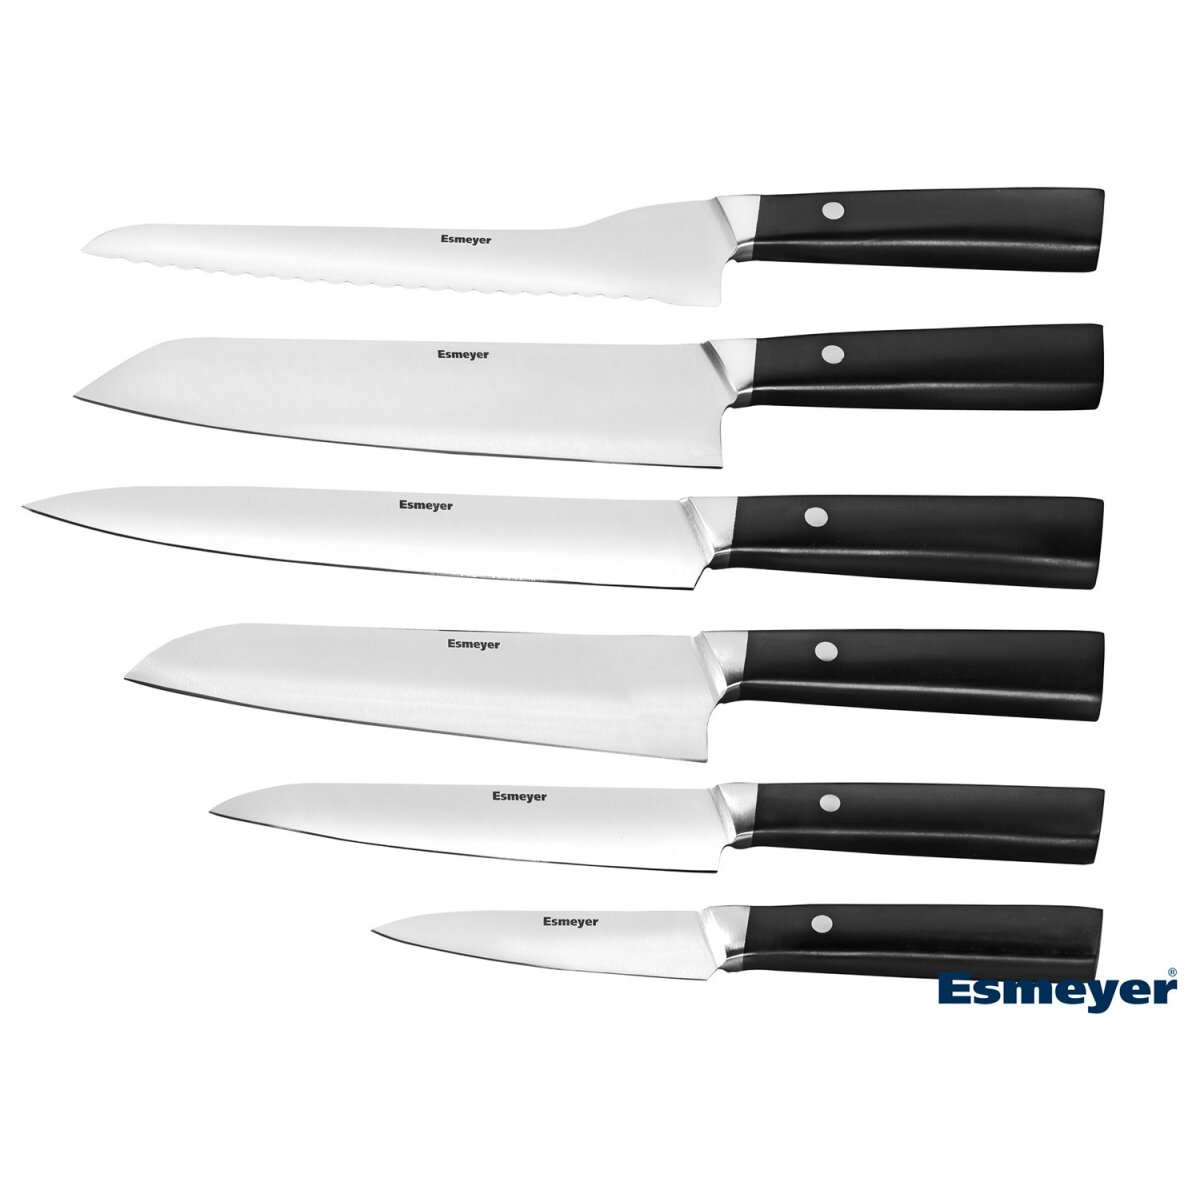 Esmeyer 32,99 Messerset € B-Ware Edelstahl neuwertig, Asia 6-teilig - aus